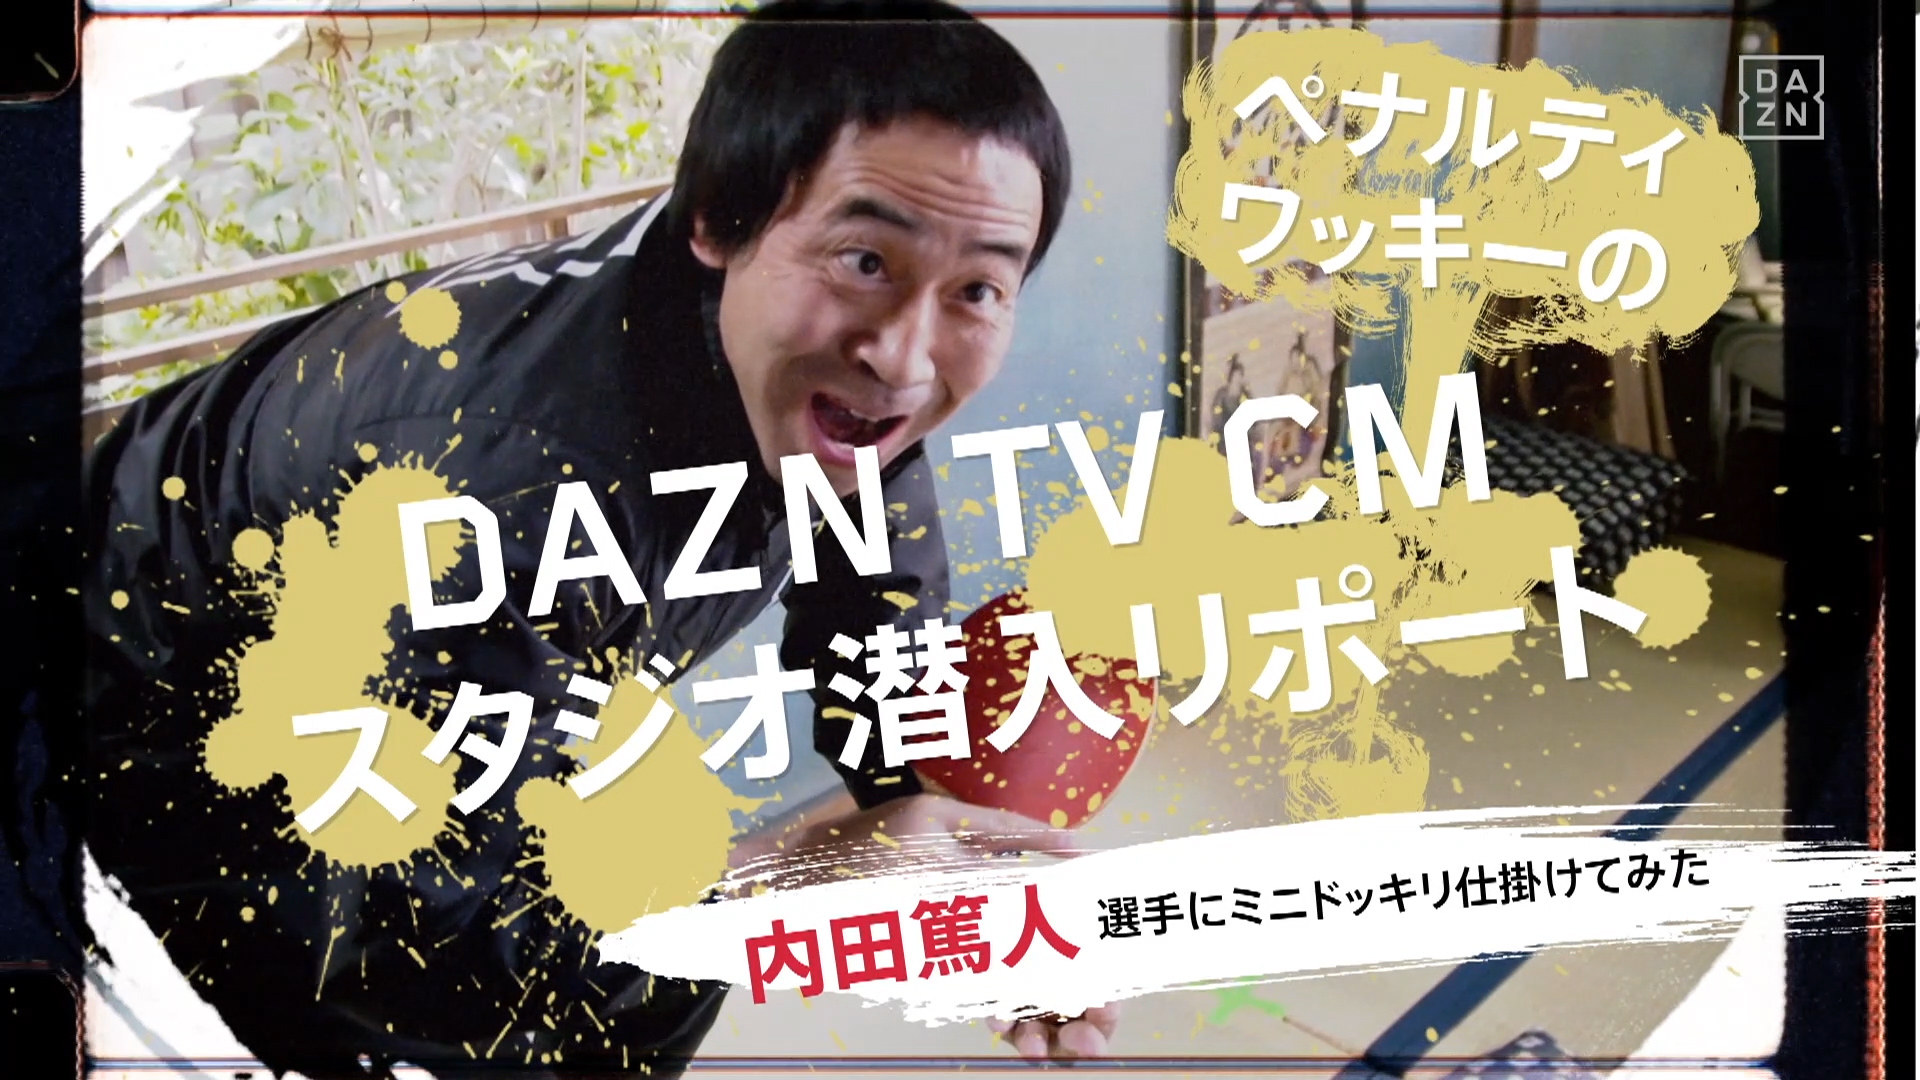 動画 ワッキーが内田篤人と槙野智章にミニドッキリ Daznのtvcmに潜入リポート Goal Com